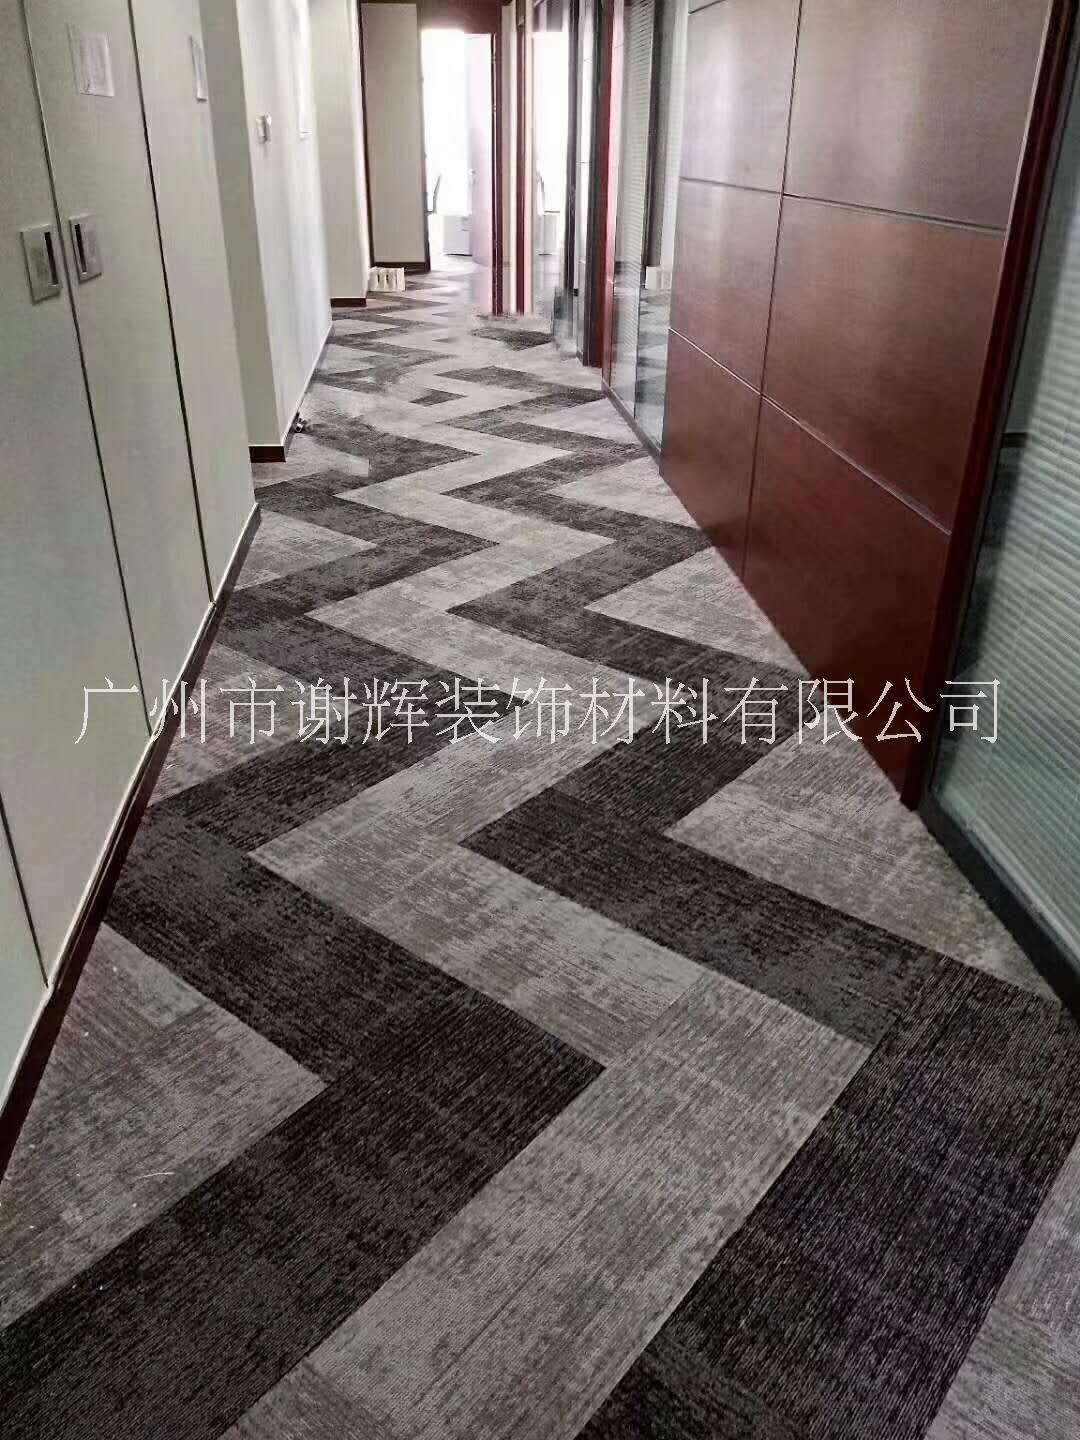 酒店尼龙地毯 酒店走道地毯  酒店房间地毯图片